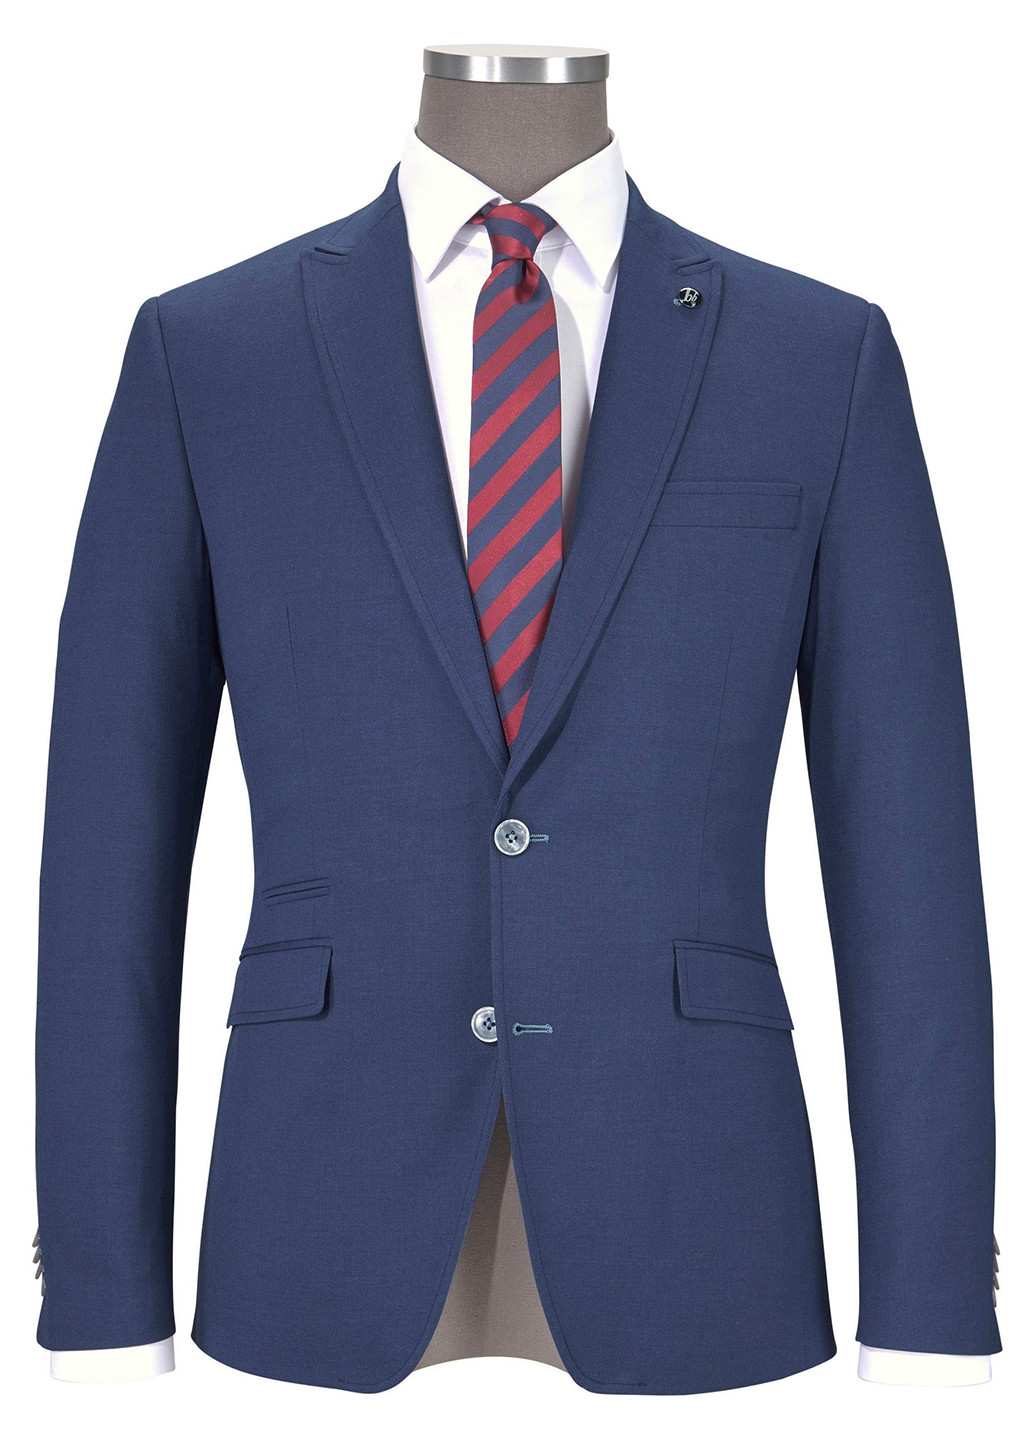 Синий демисезонный костюм (пиджак, брюки, галстук) брючный Bruno Banani